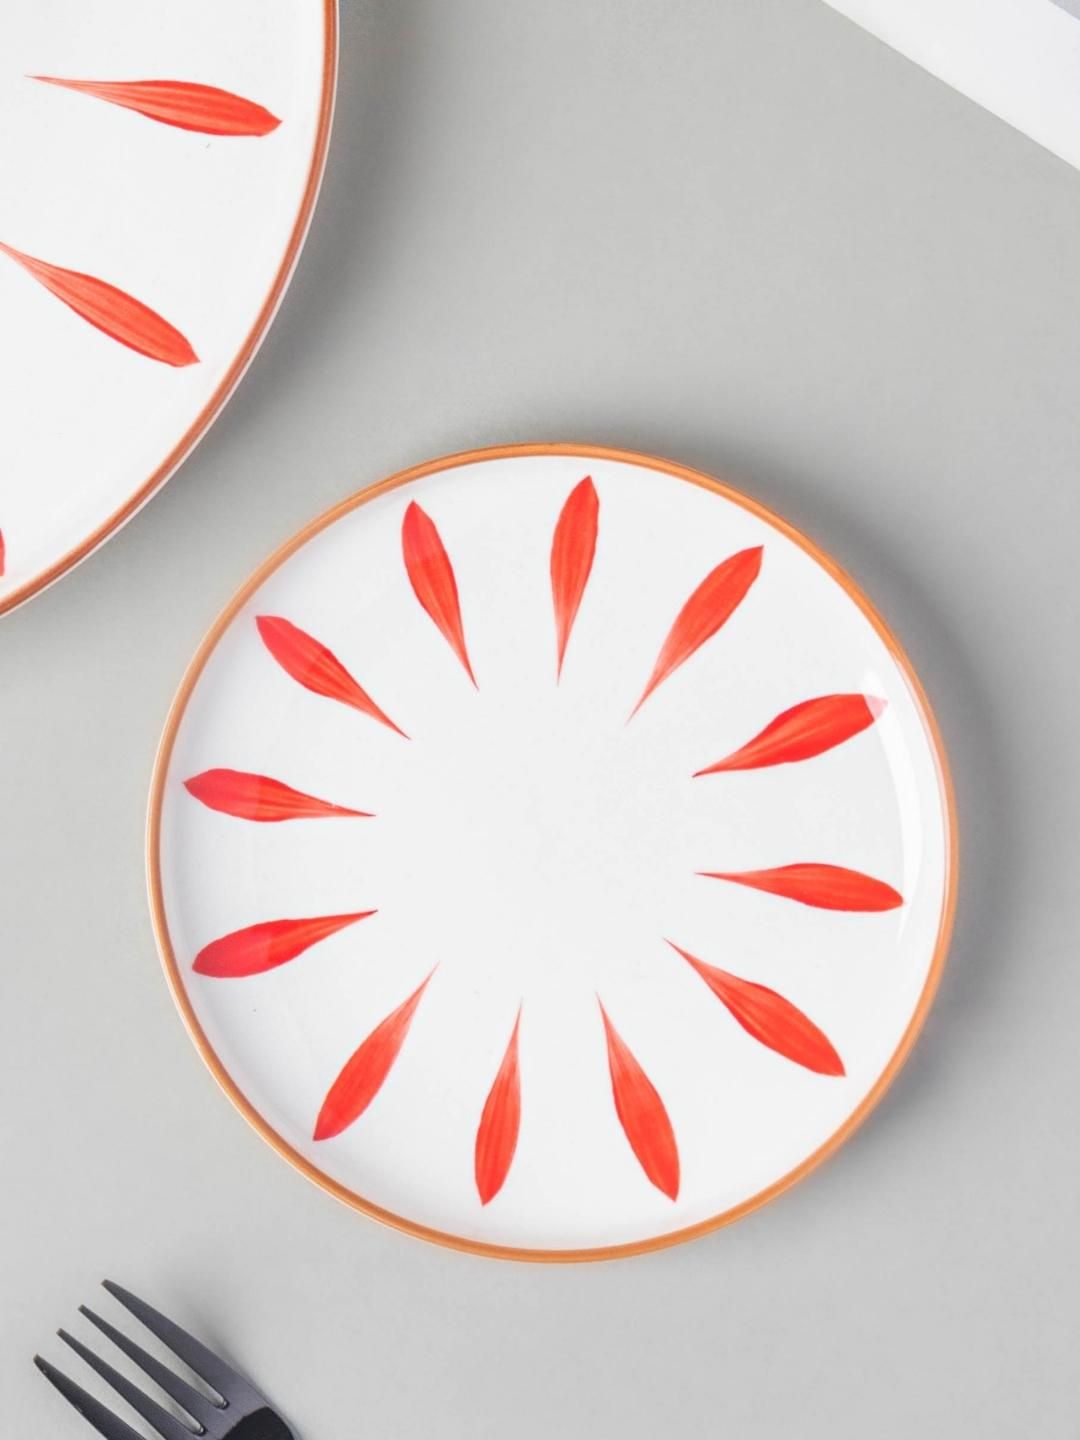 Nestasia White & Red Printed Ceramic Glossy Plate Price in India